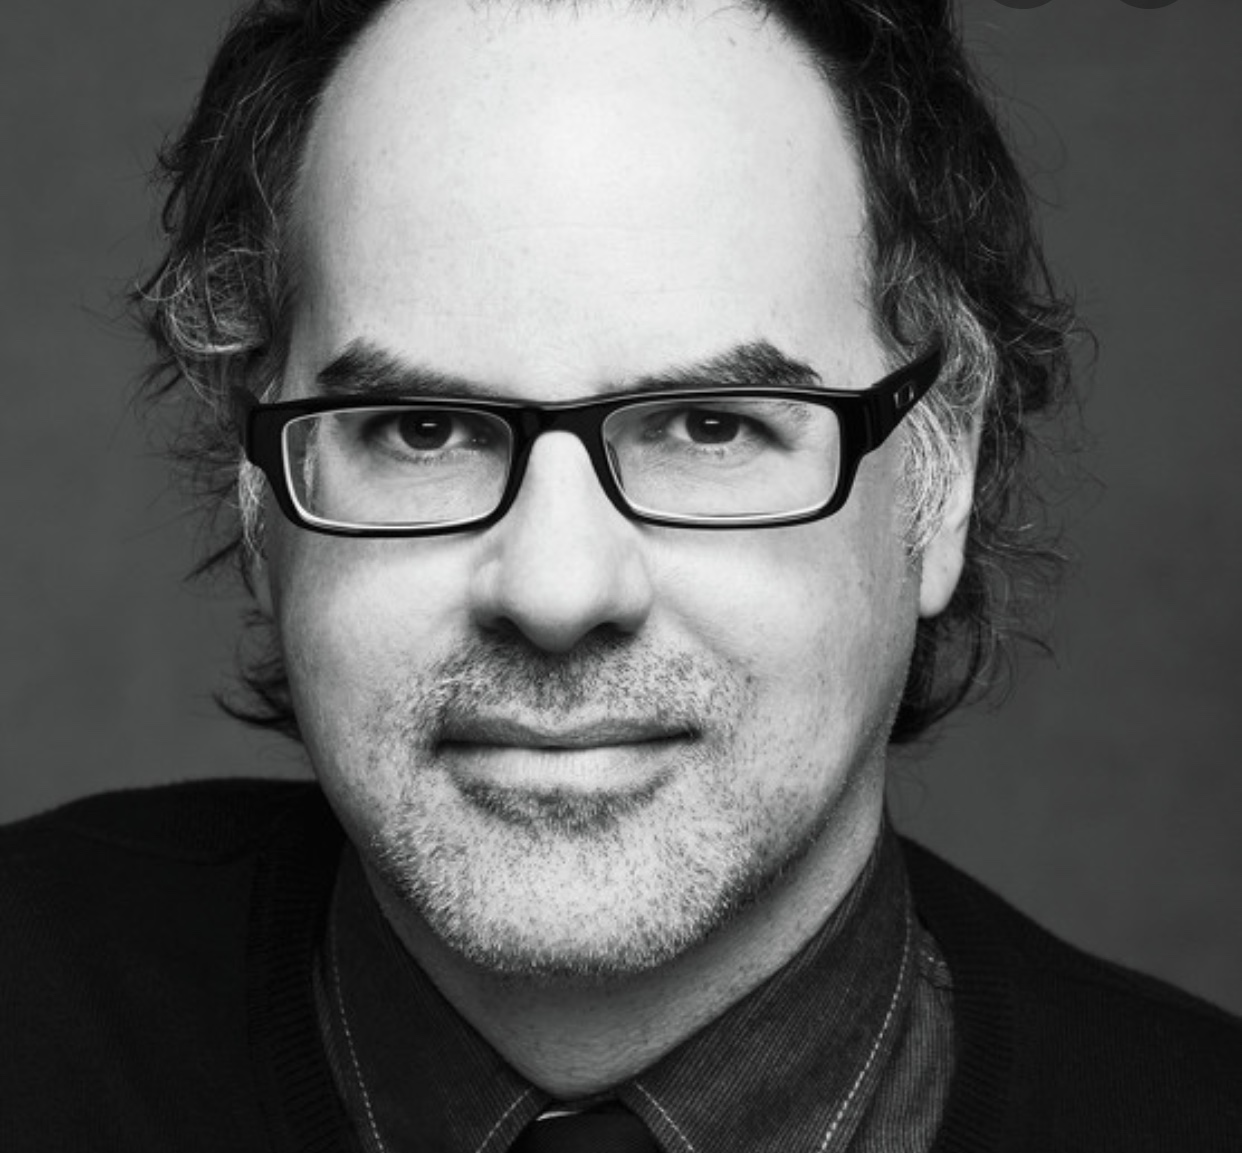 Une photo en noir et blanc de Stéphane Dompiere, un homme portant des lunettes.